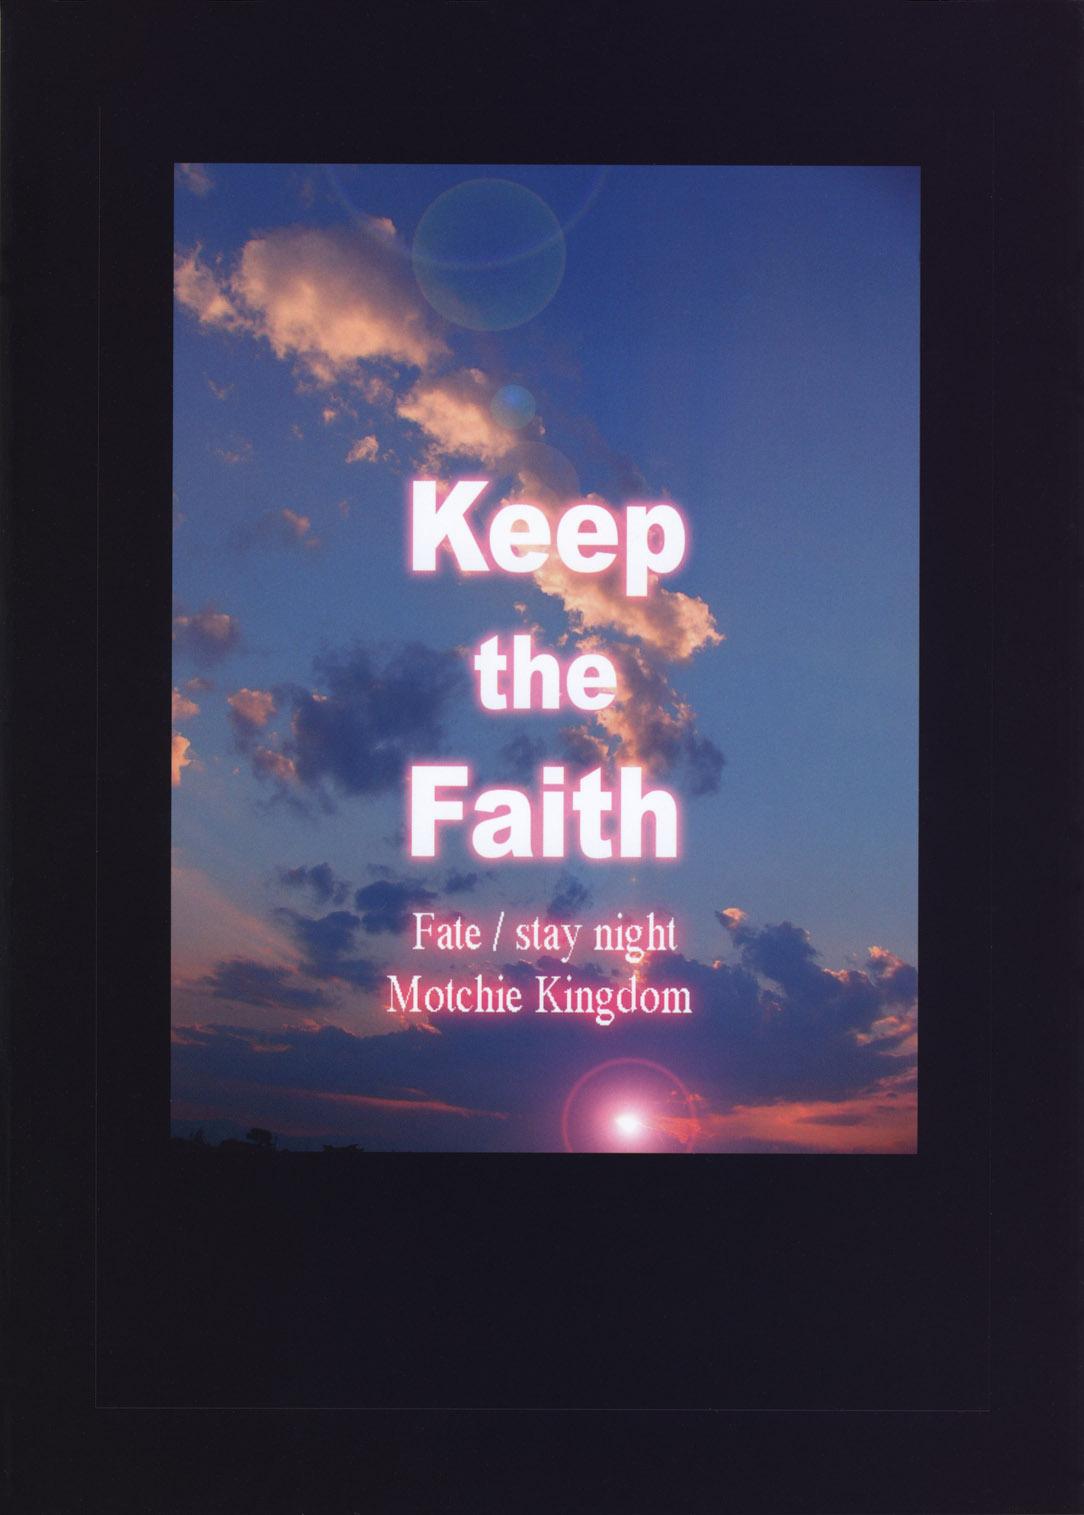 Keep the Faith 46